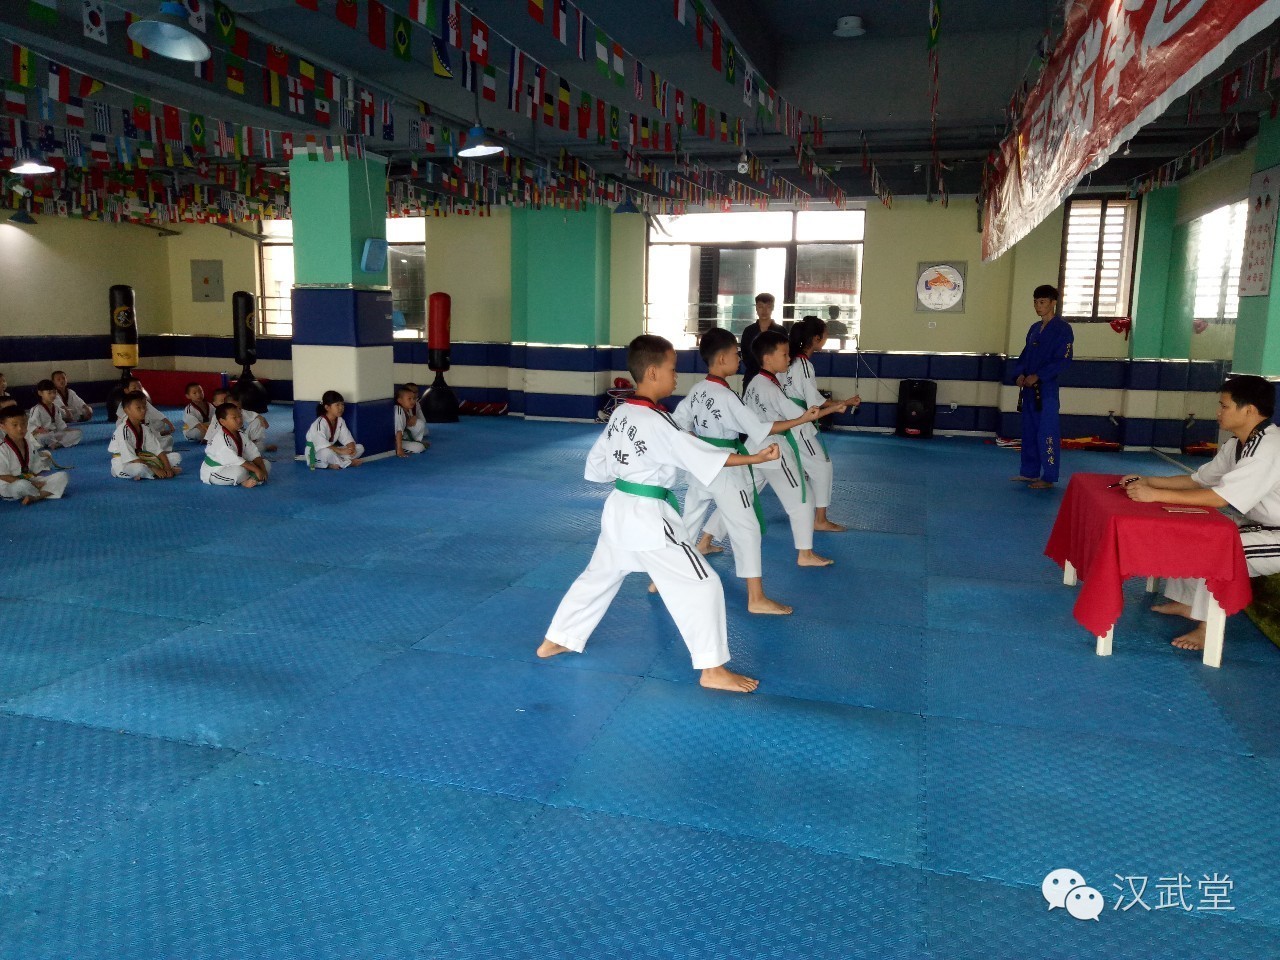 跆拳道是最适合孩子的运动项目